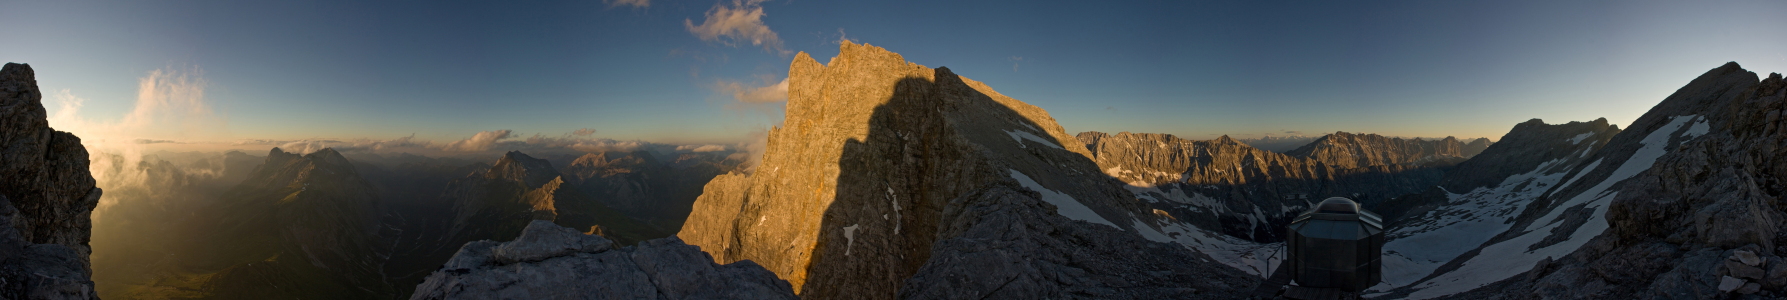 Bild-Nr: 9436682 Karwendel Panorama Erstellt von: Maurice Küsel